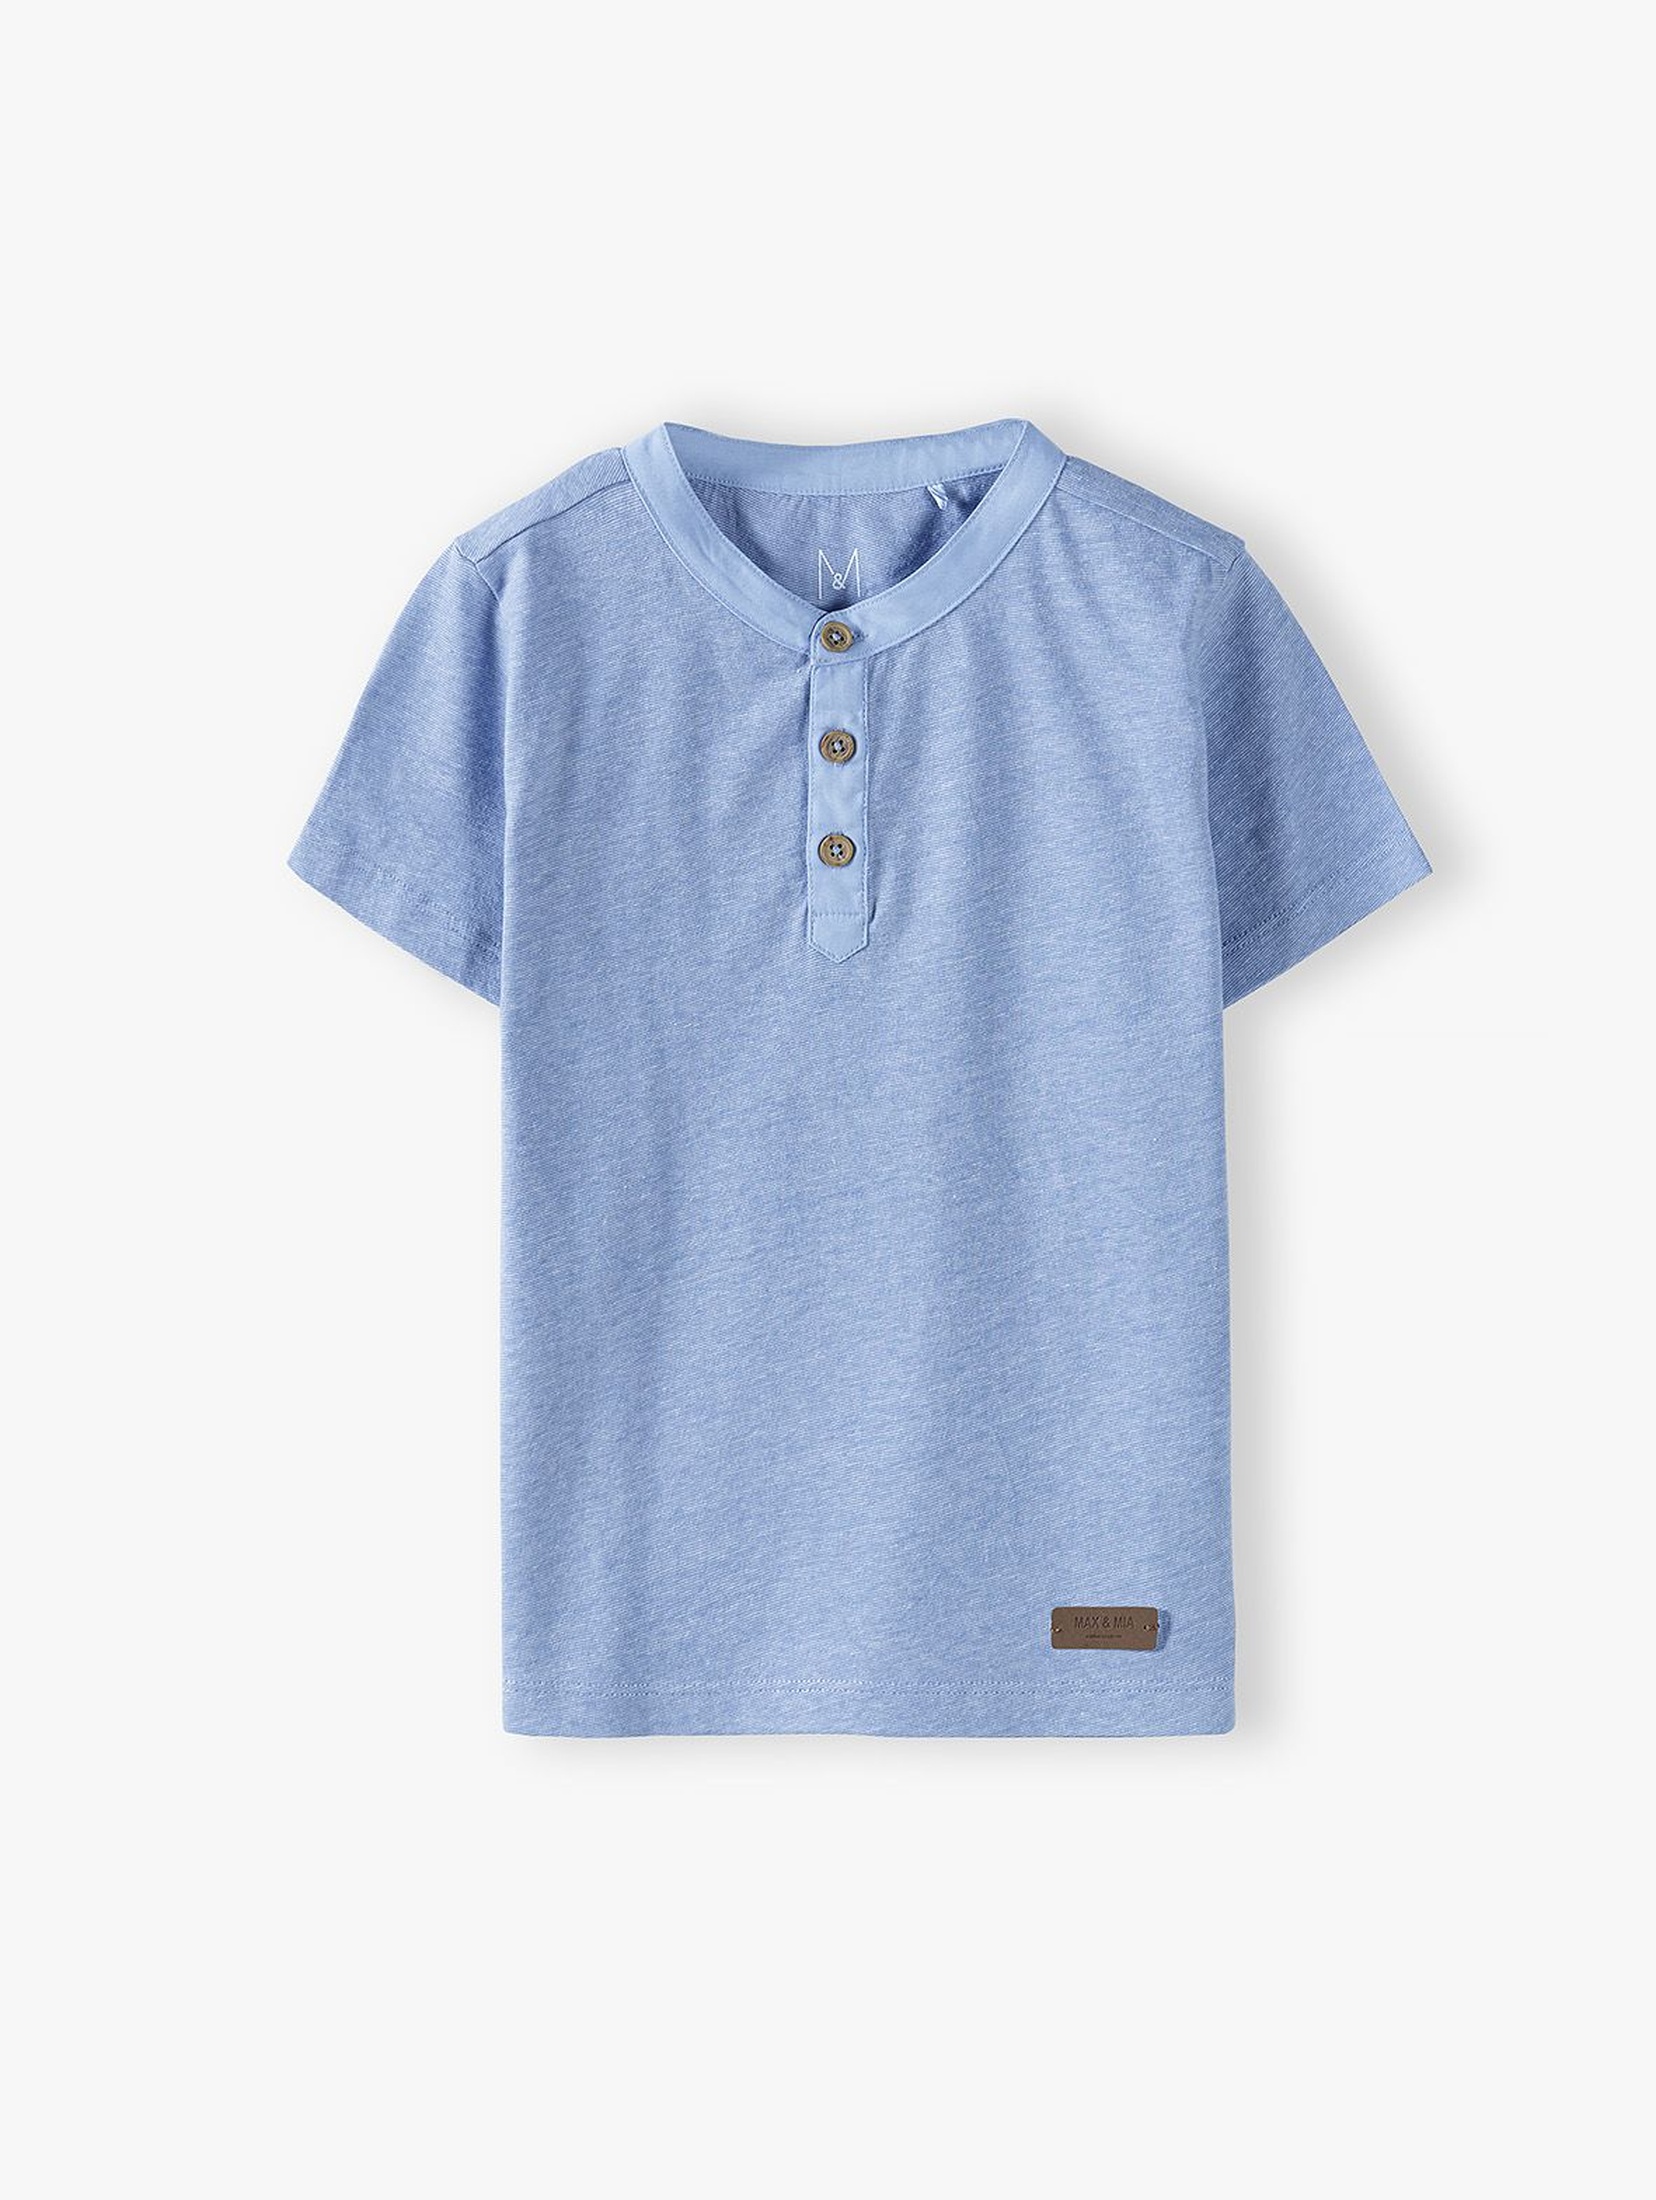 Bawełniany t-shirt chłopięcy niebieski